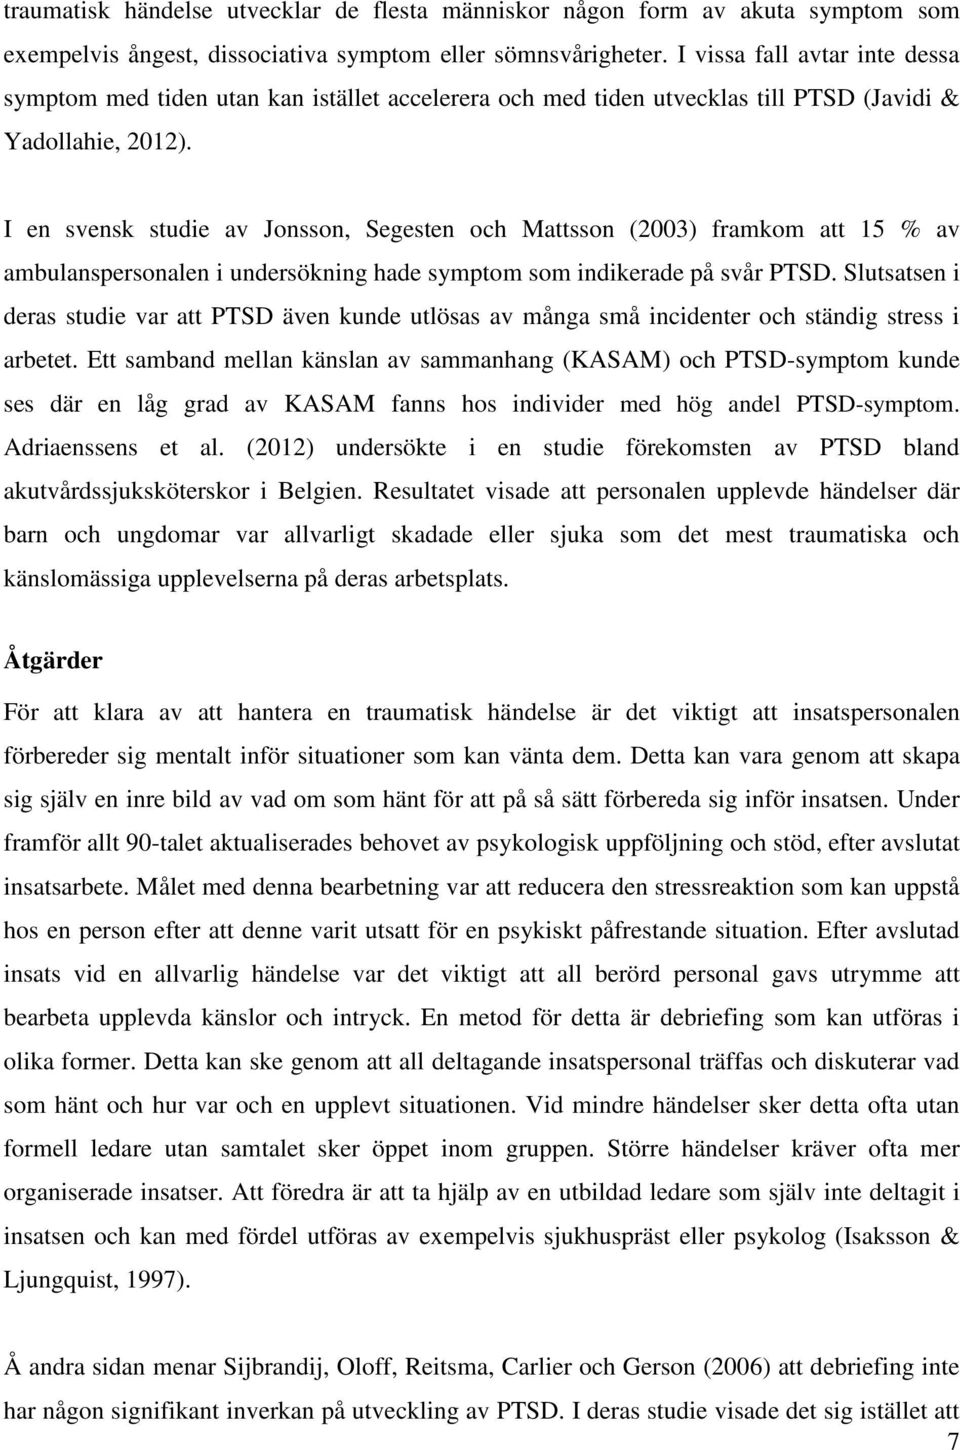 I en svensk studie av Jonsson, Segesten och Mattsson (2003) framkom att 15 % av ambulanspersonalen i undersökning hade symptom som indikerade på svår PTSD.